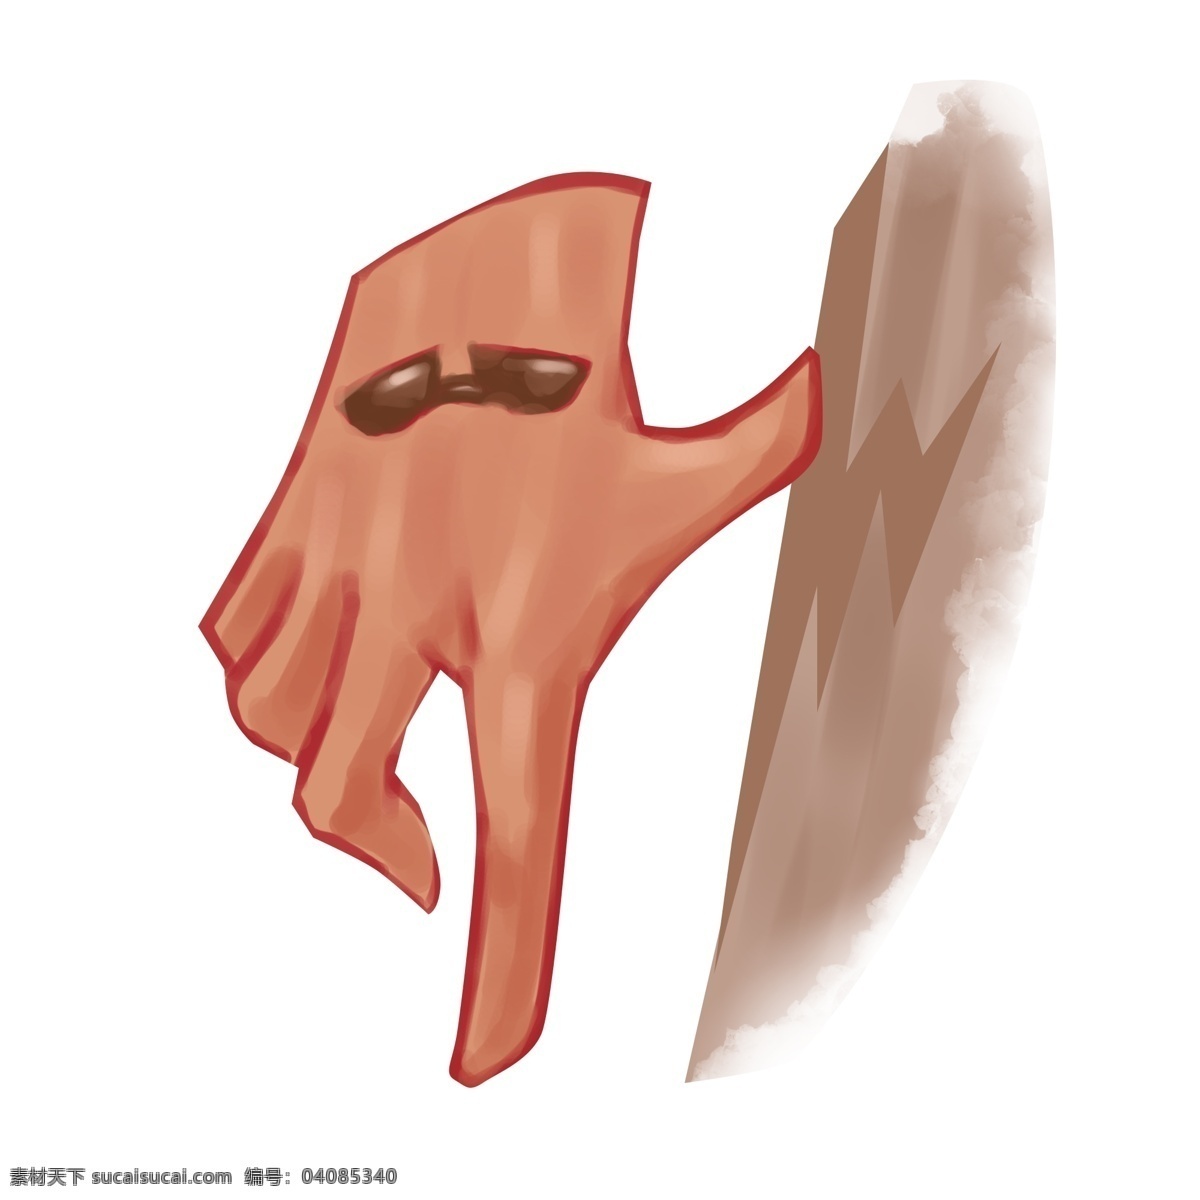 丈量 墙 手势 插画 丈量的手势 卡通插画 手势插画 比划手势 细长手指 长长的手指 靠墙的手势